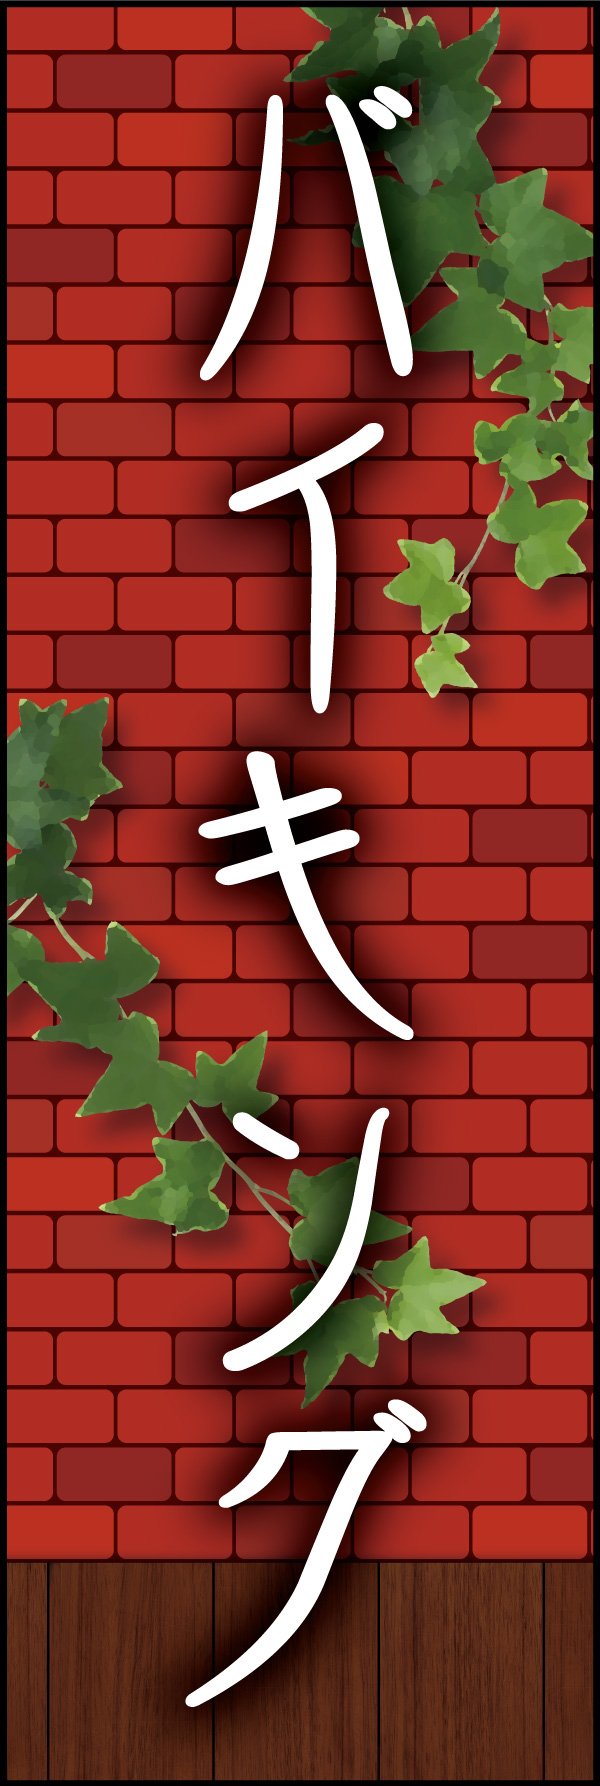 バイキング 06 「バイキング」の幟です。赤煉瓦をバックに、懐かしい洋食屋さんをイメージしてデザインしました。(Y.M)